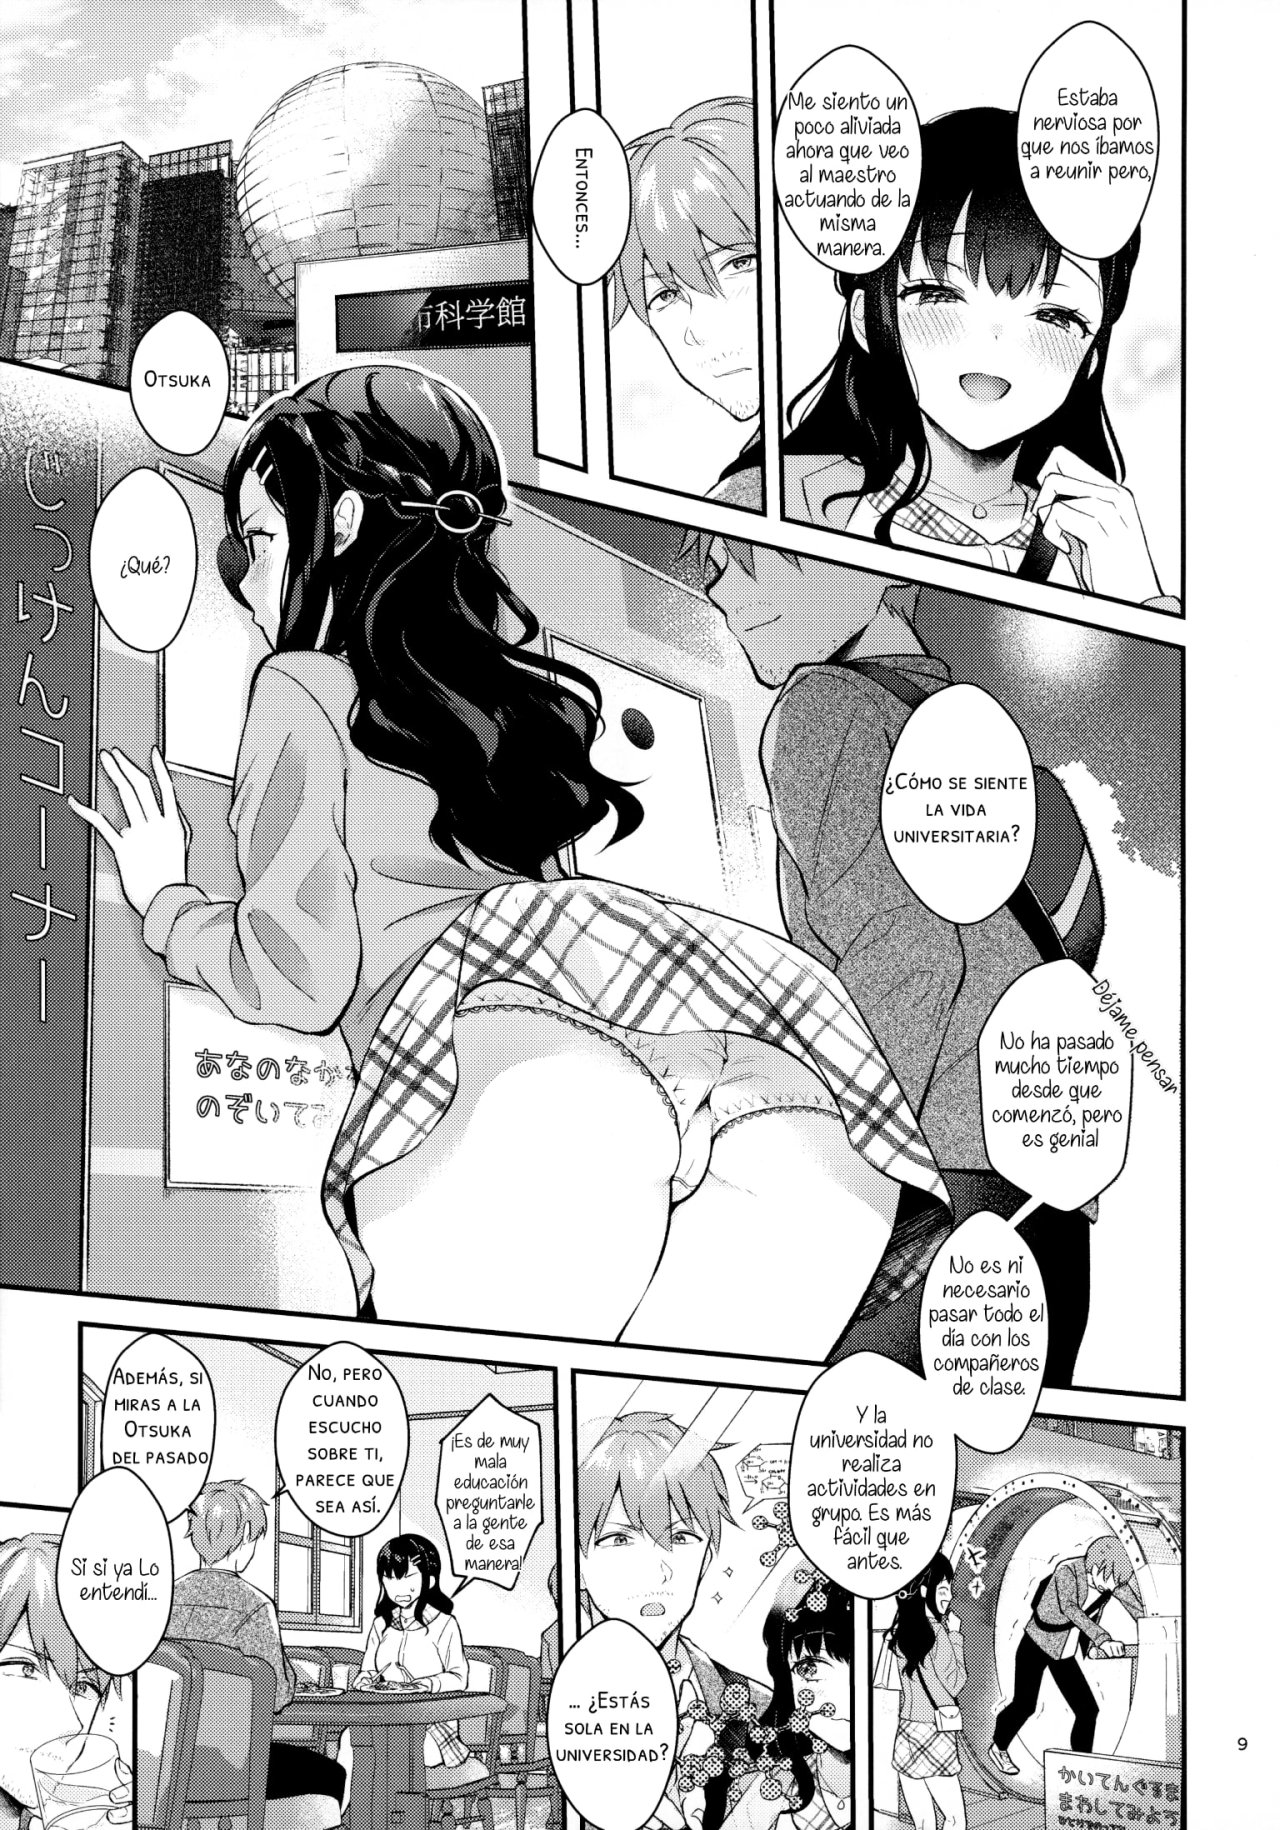 Sunshower-JK Miyako no Valentine Manga 3 - 7